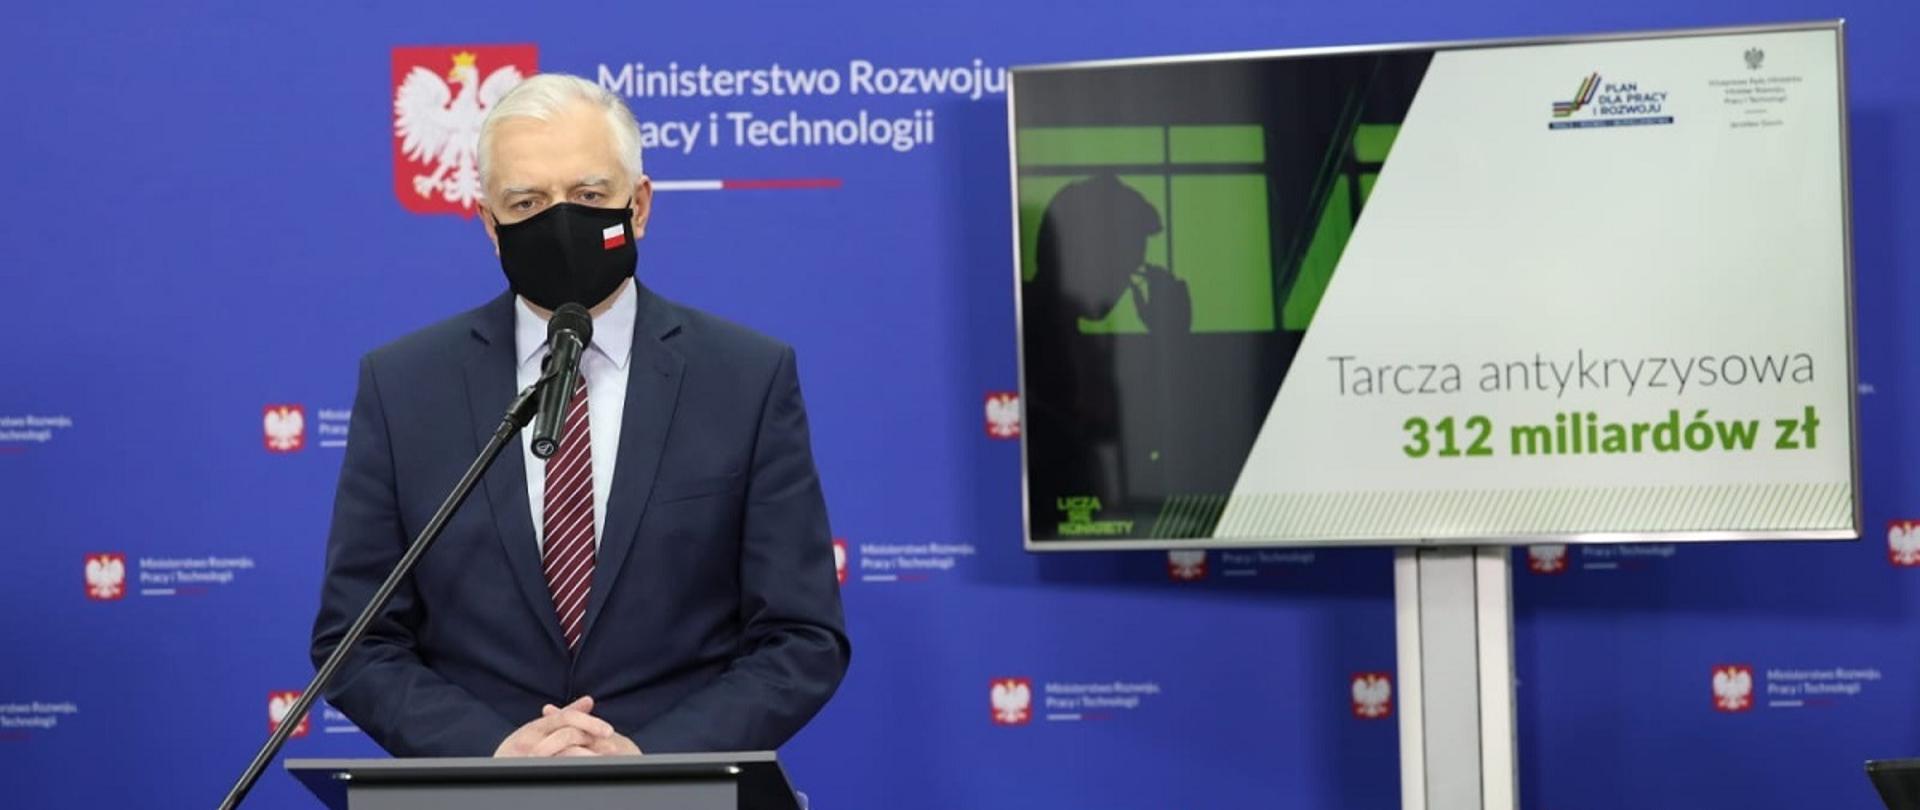 Wicepremier i minister rozwoju, pracy i technologii Jarosław Gowin stojący w maseczce przed mównicą, po jego prawej stronie ekran z napisem: :"Tarcza antykryzysowa 312 miliardów"